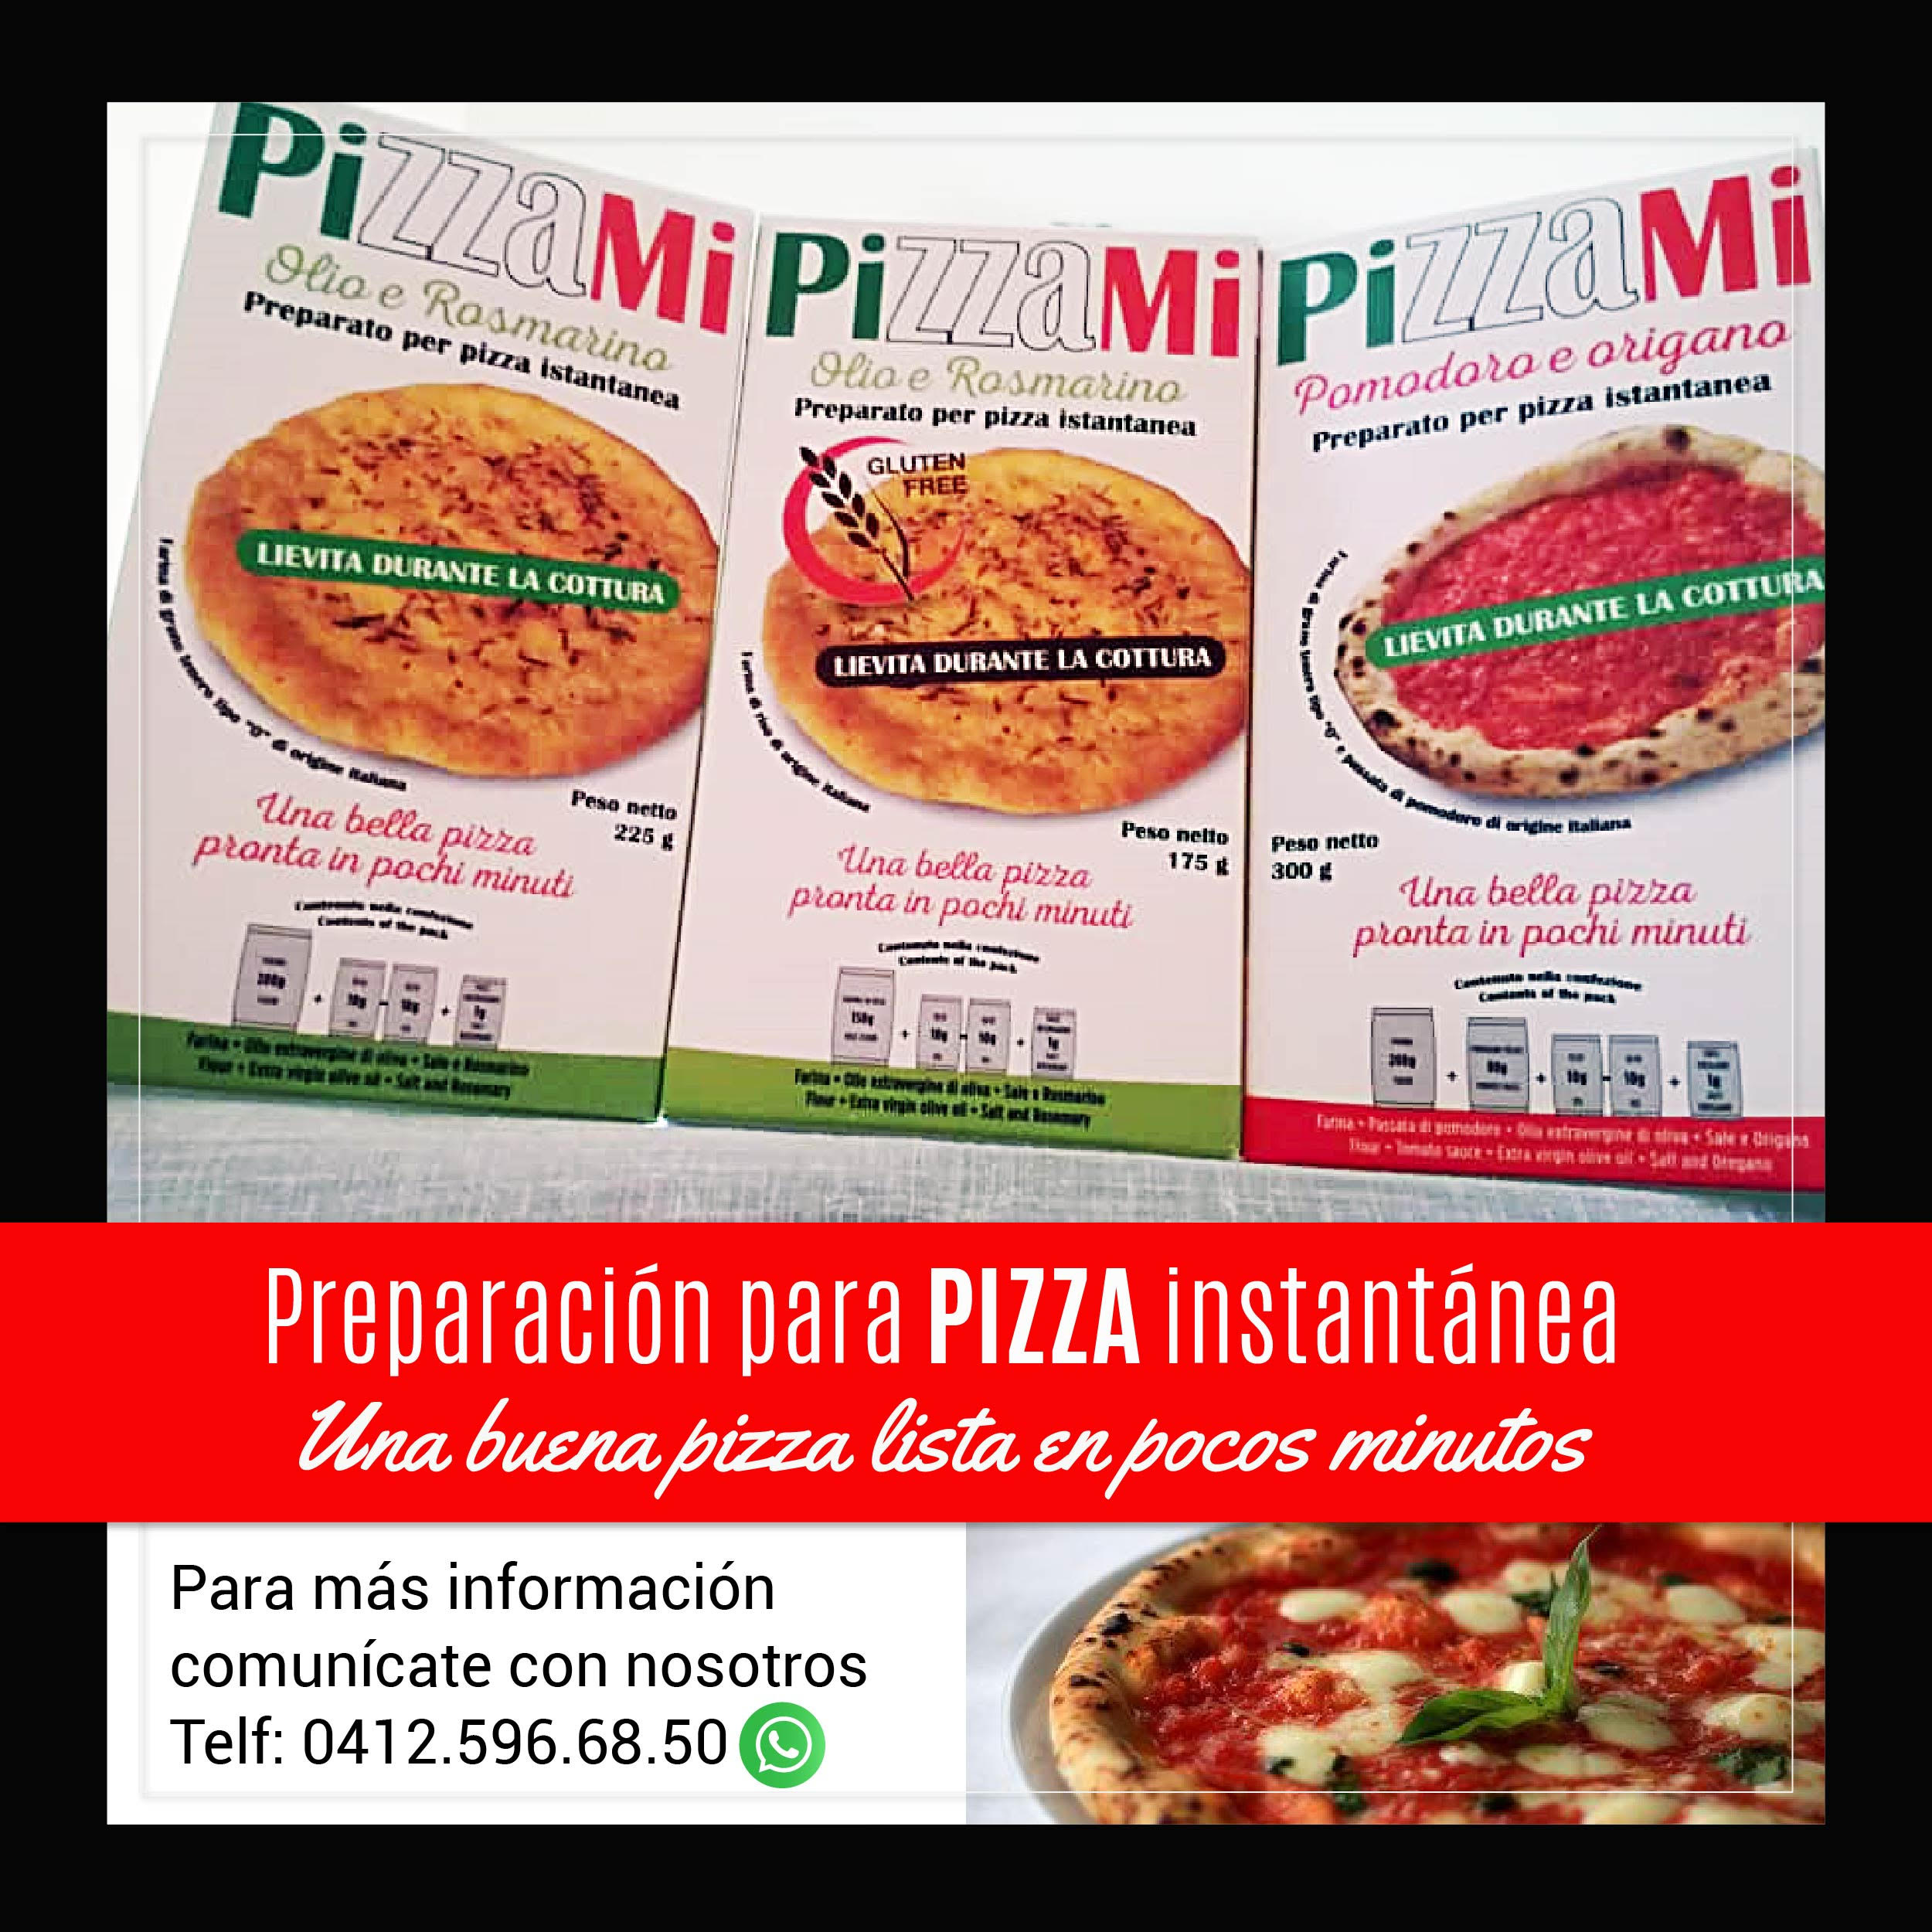 Pubblicità Pizzami3